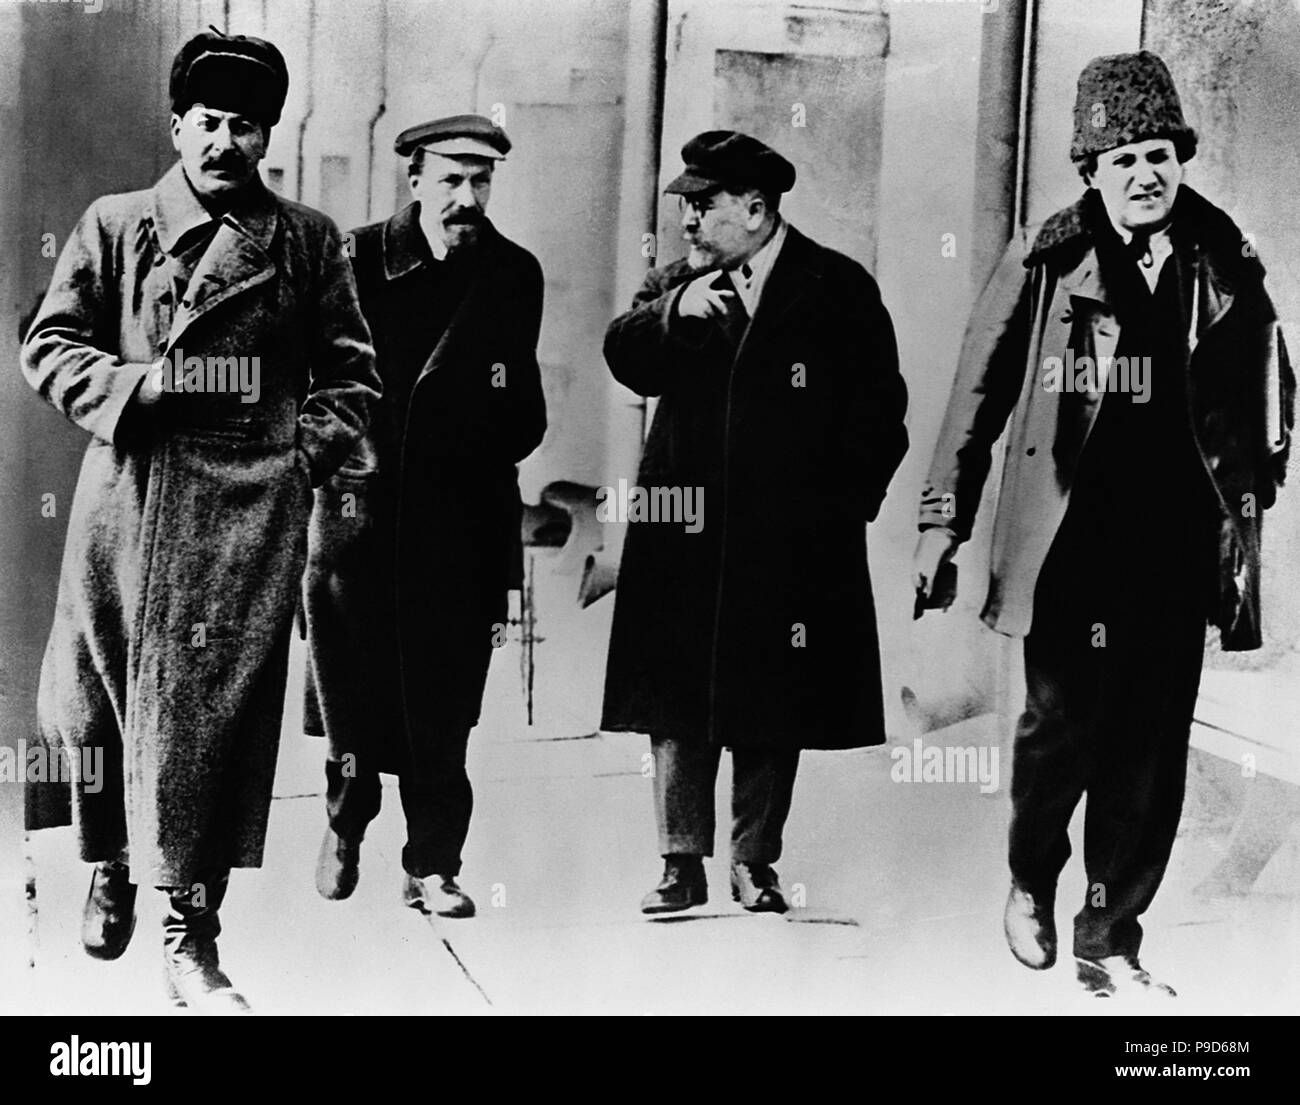 Joseph Stalin, Alexey Rykov, Lev Kamenev and Grigory Zinoviev. Museum: State History Museum, Moscow. Stock Photo